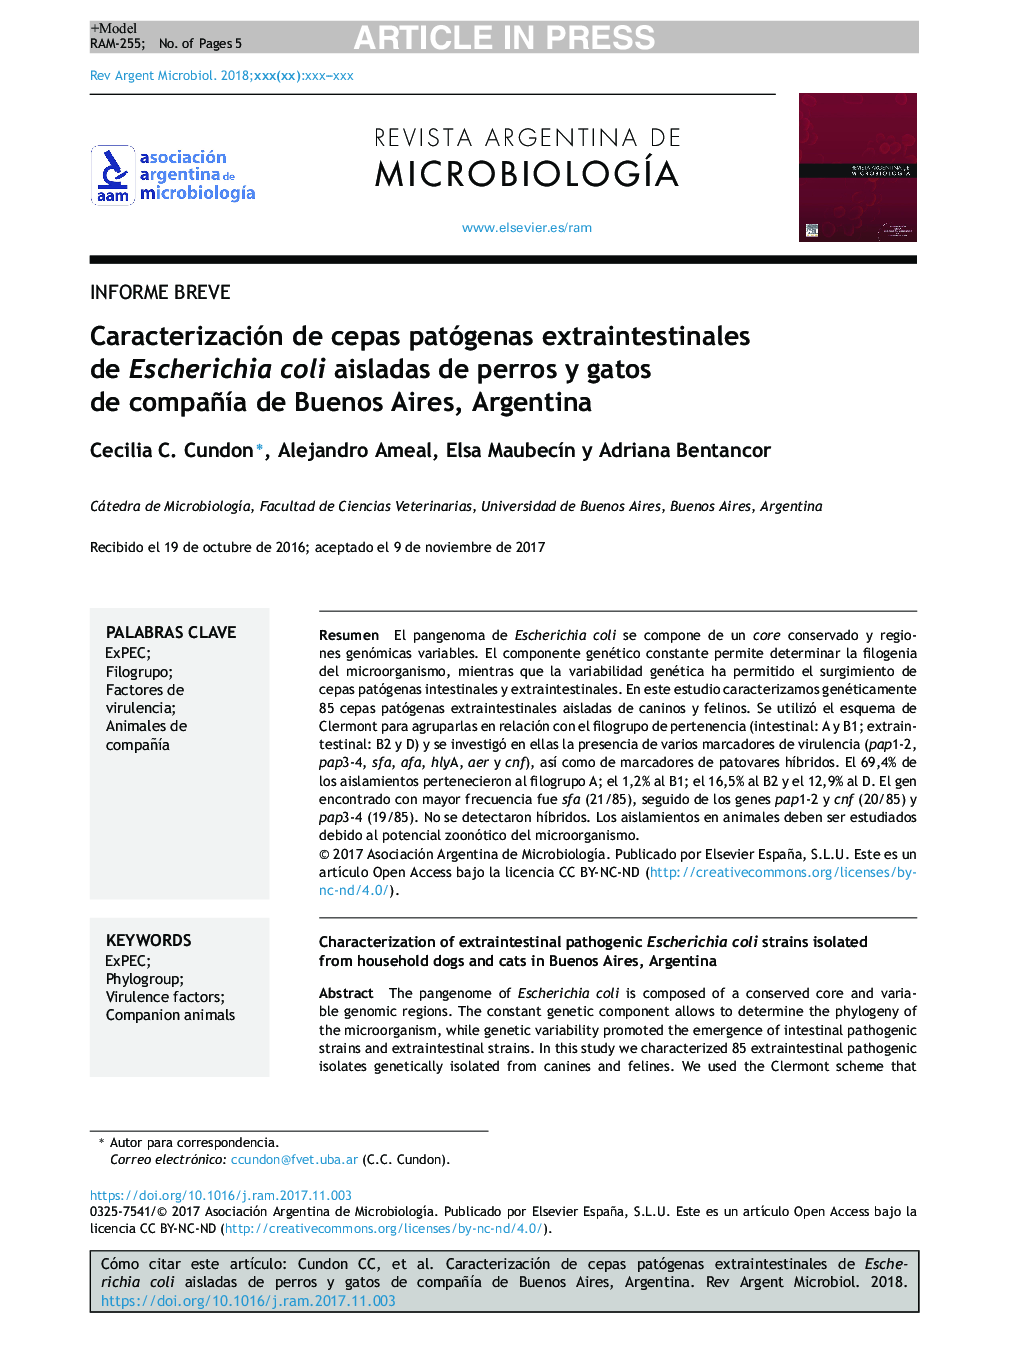 Caracterización de cepas patógenas extraintestinales de Escherichia coli aisladas de perros y gatos de compañÃ­a de Buenos Aires, Argentina